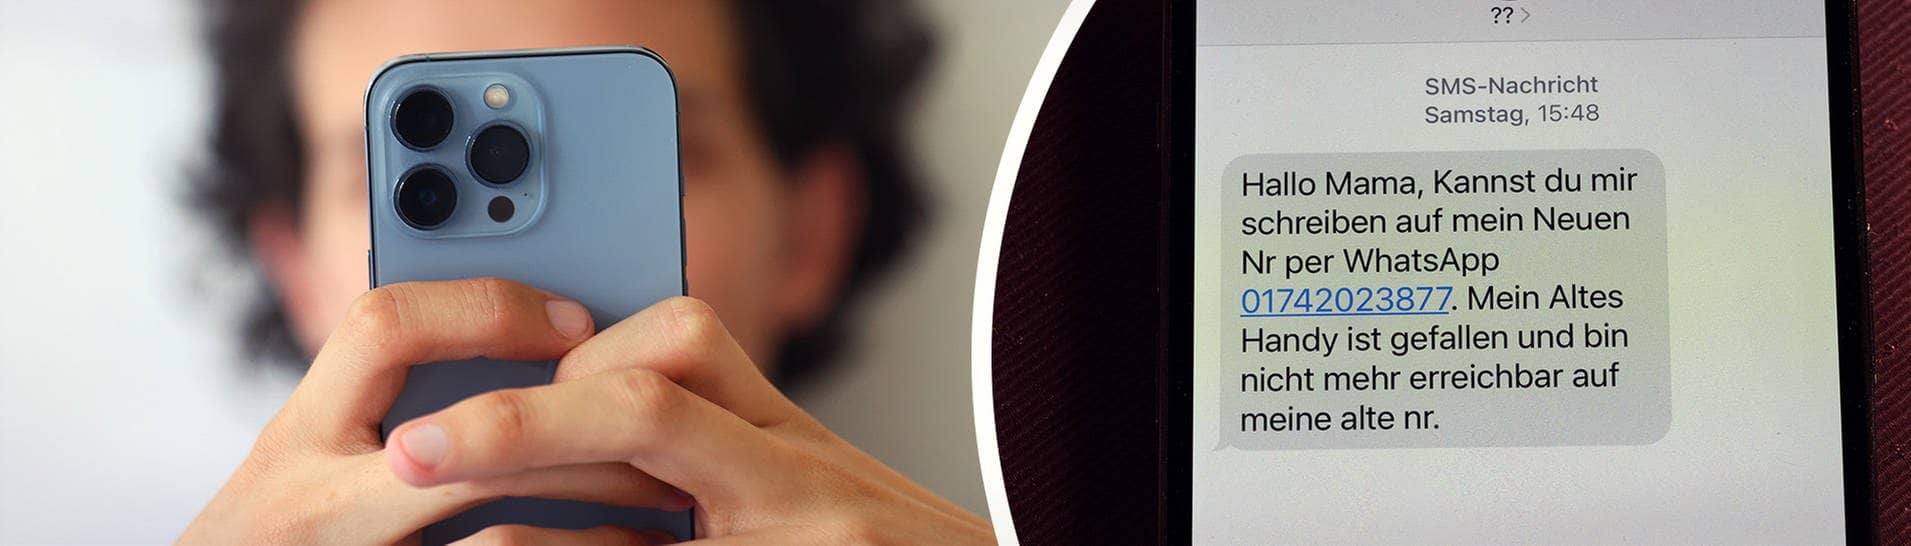 Mann hält ein Smartphone in der Hand; eine SMS von einem Betrüger (Foto: Collage: IMAGO / MiS, picture alliance/dpa/Deutsche Presse-Agentur GmbH | Karl-Josef Hildenbrand)